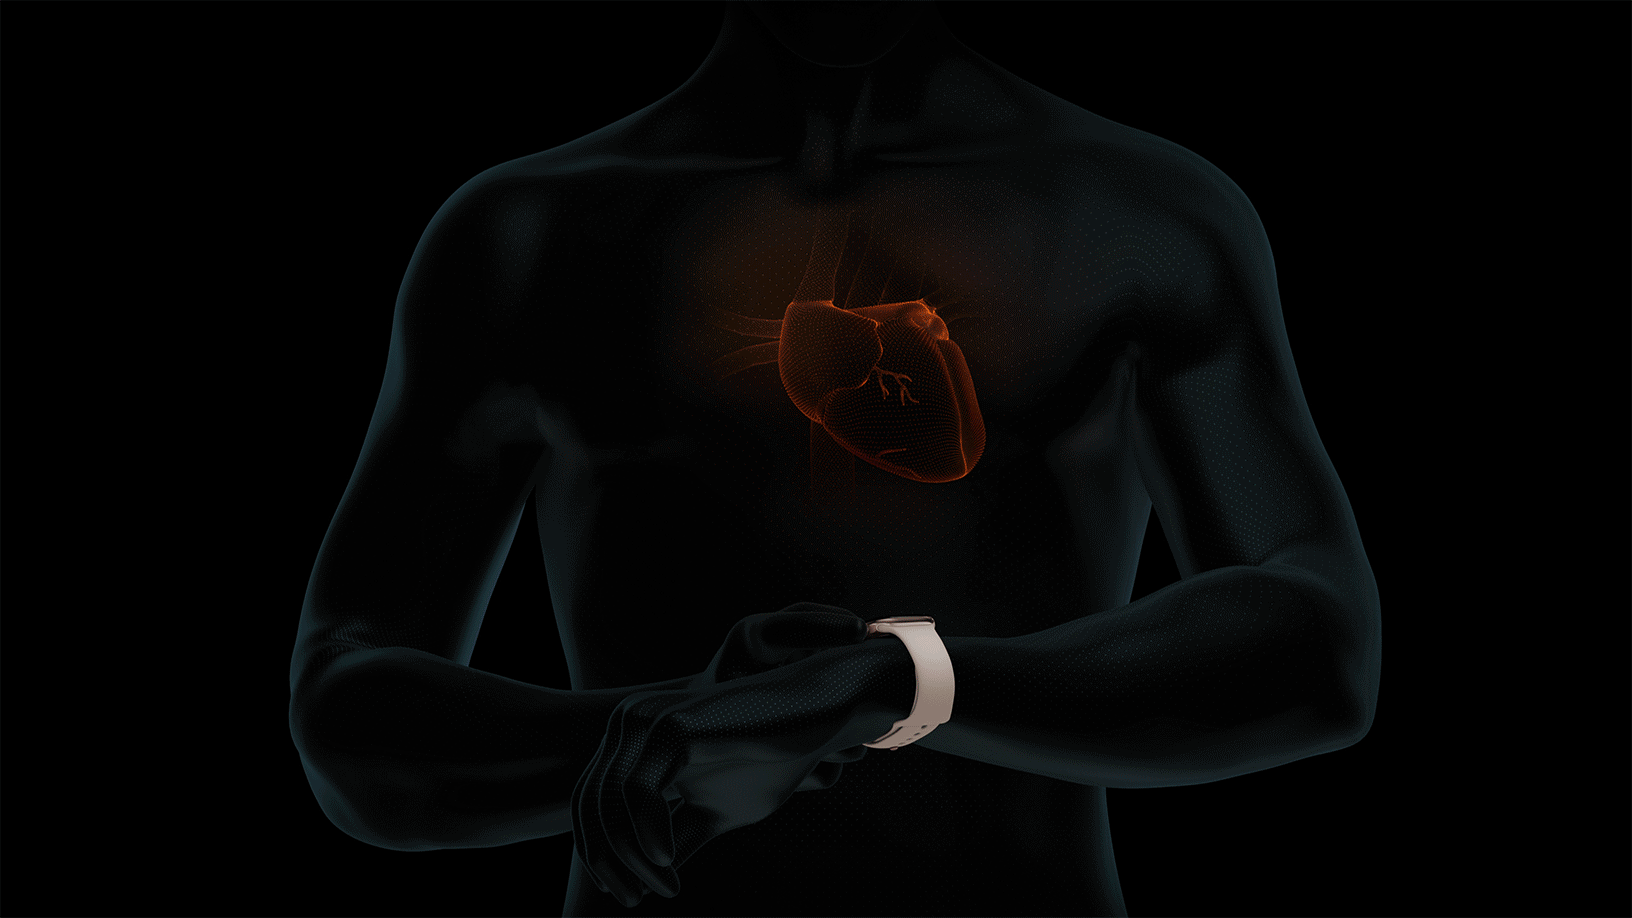 سنجش ضربان قلب با سنسور پالس اکسی متر ساعت های هوشمند اپل واچ